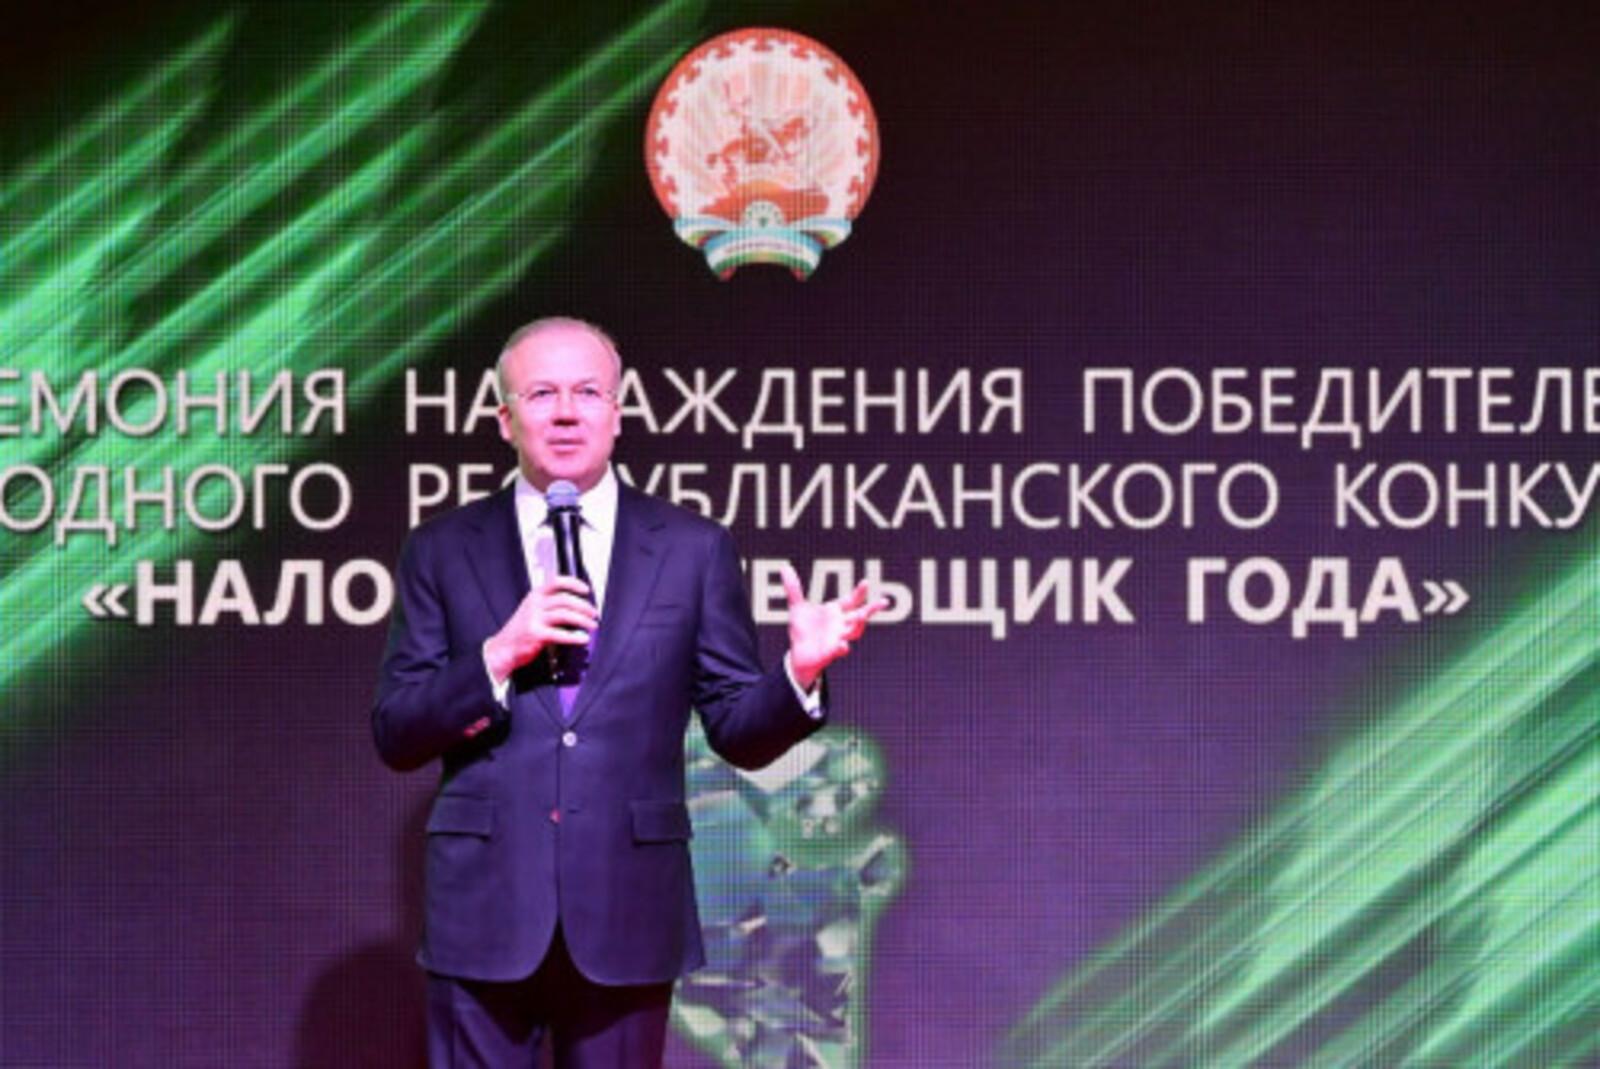 Премьер-министр Правительства Башкортостана наградил победителей республиканского конкурса «Налогоплательщик года»